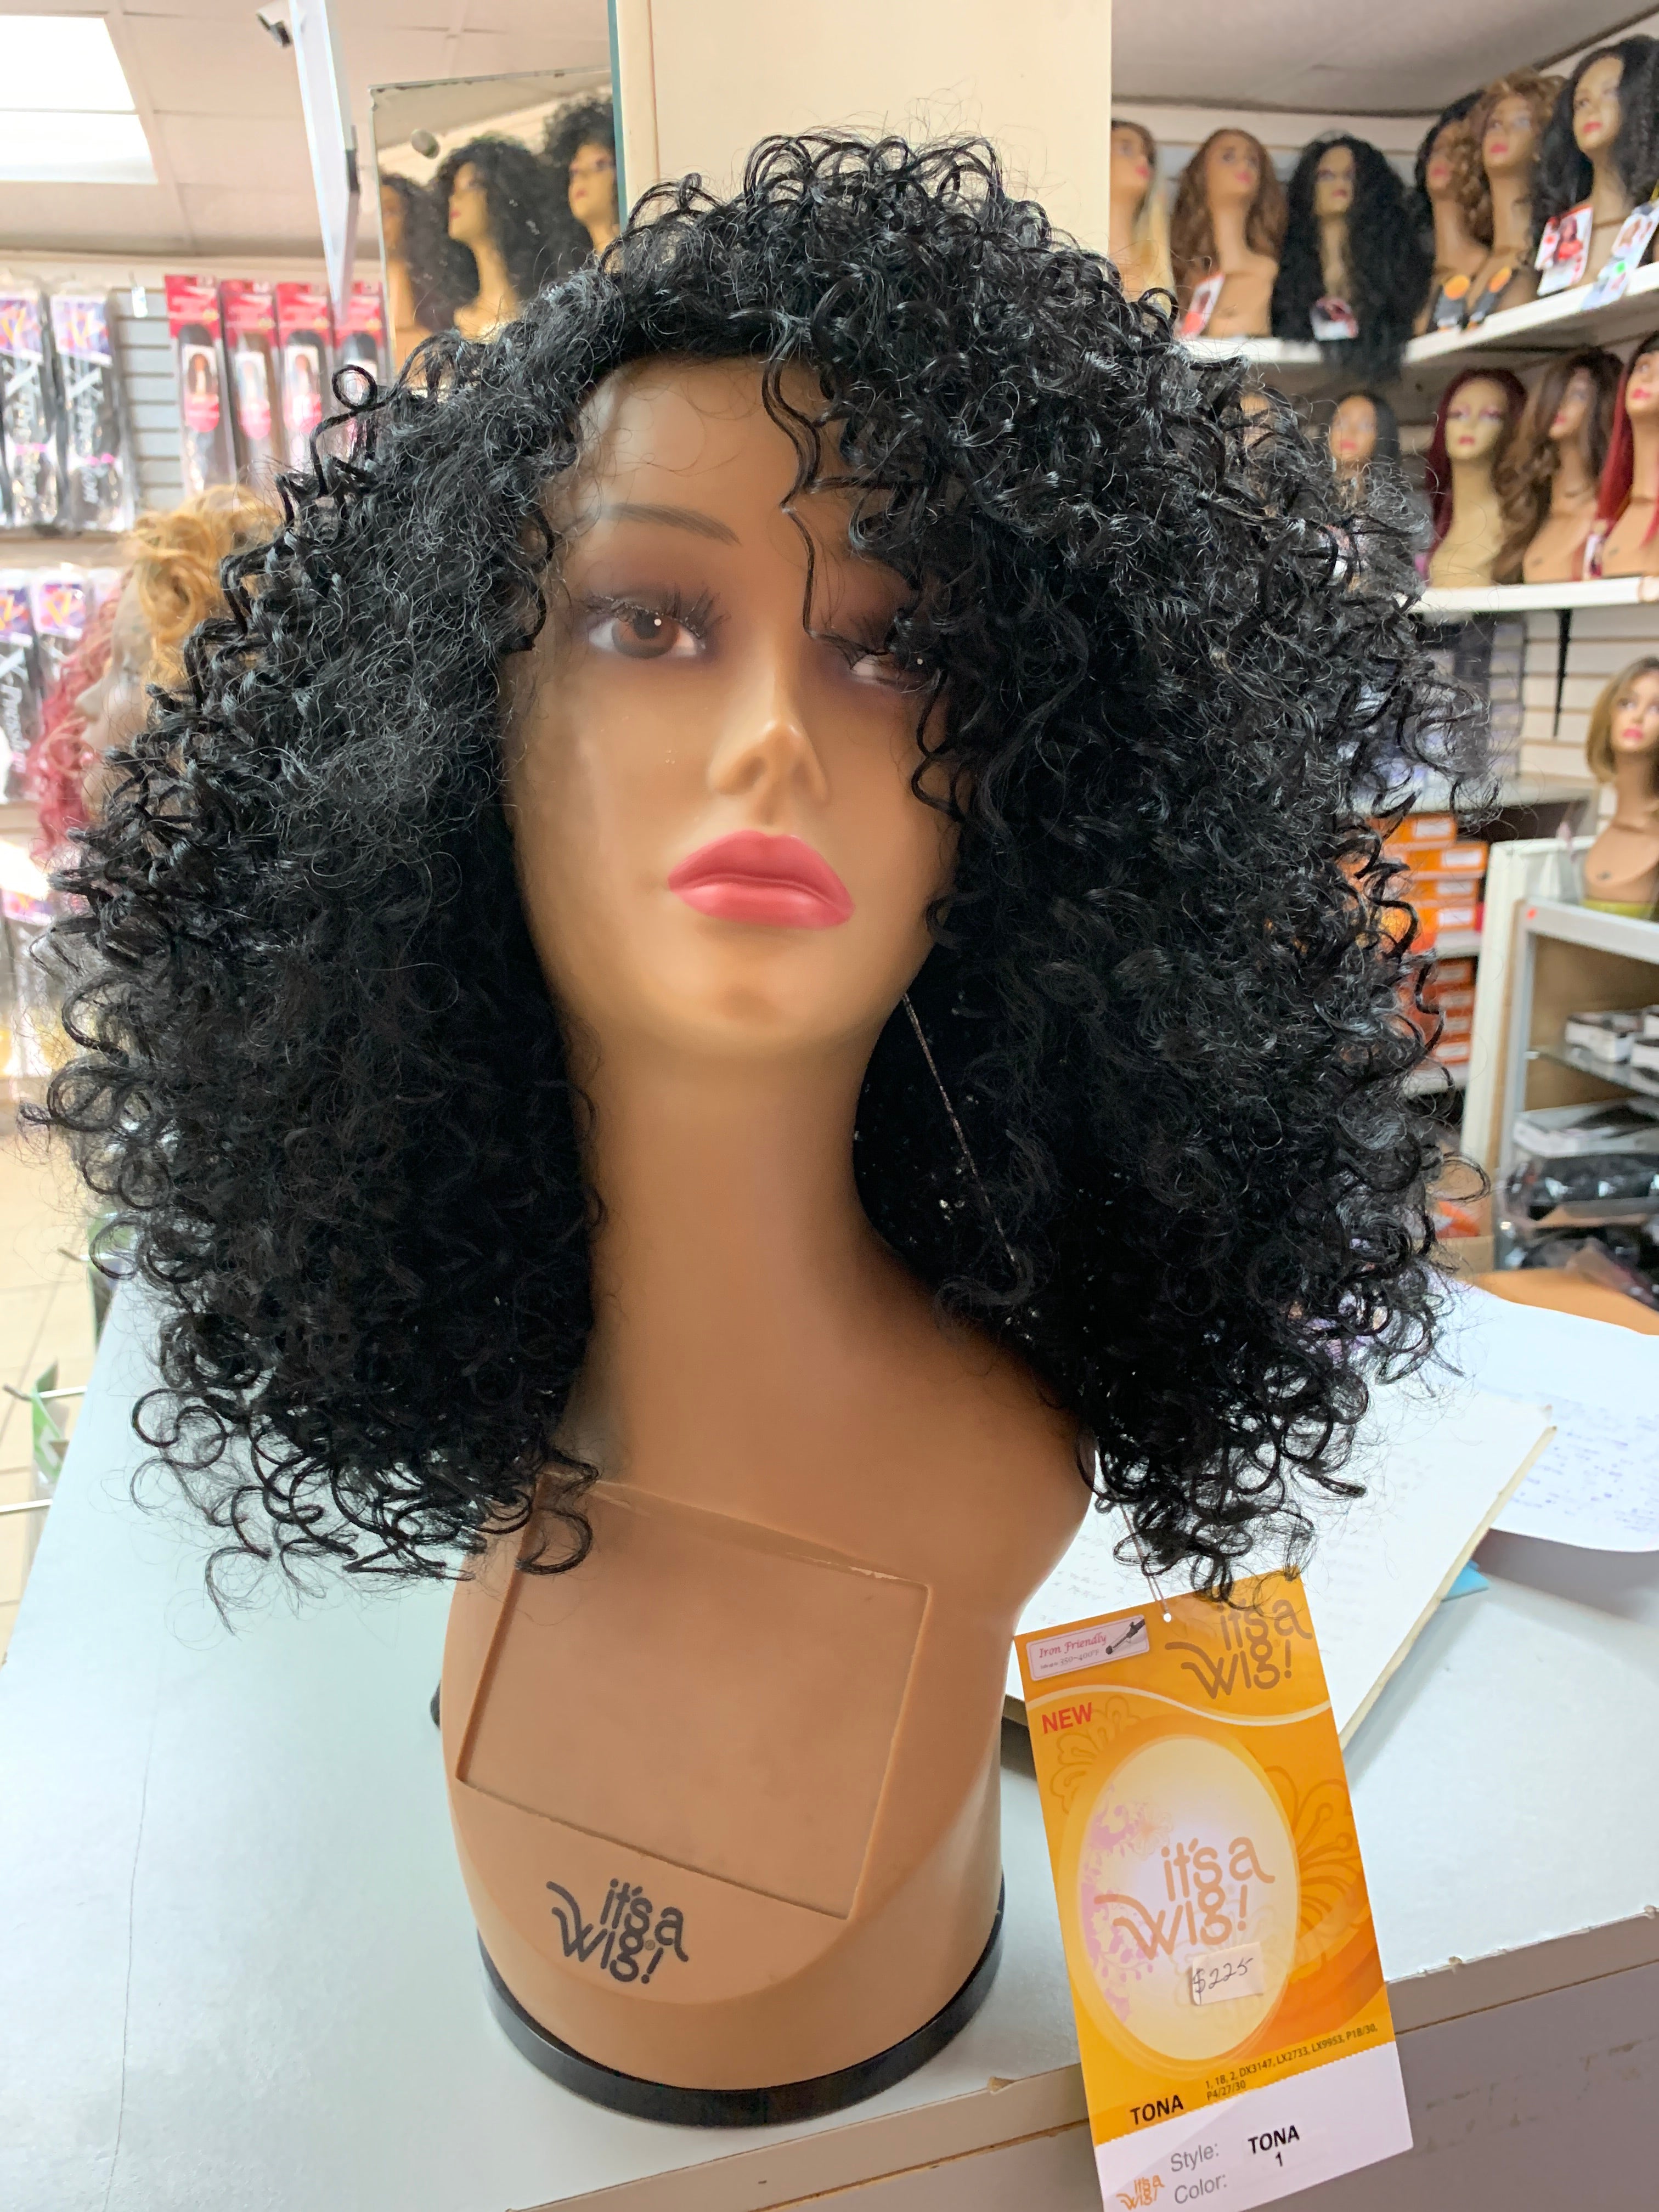 It’s a wig Tona